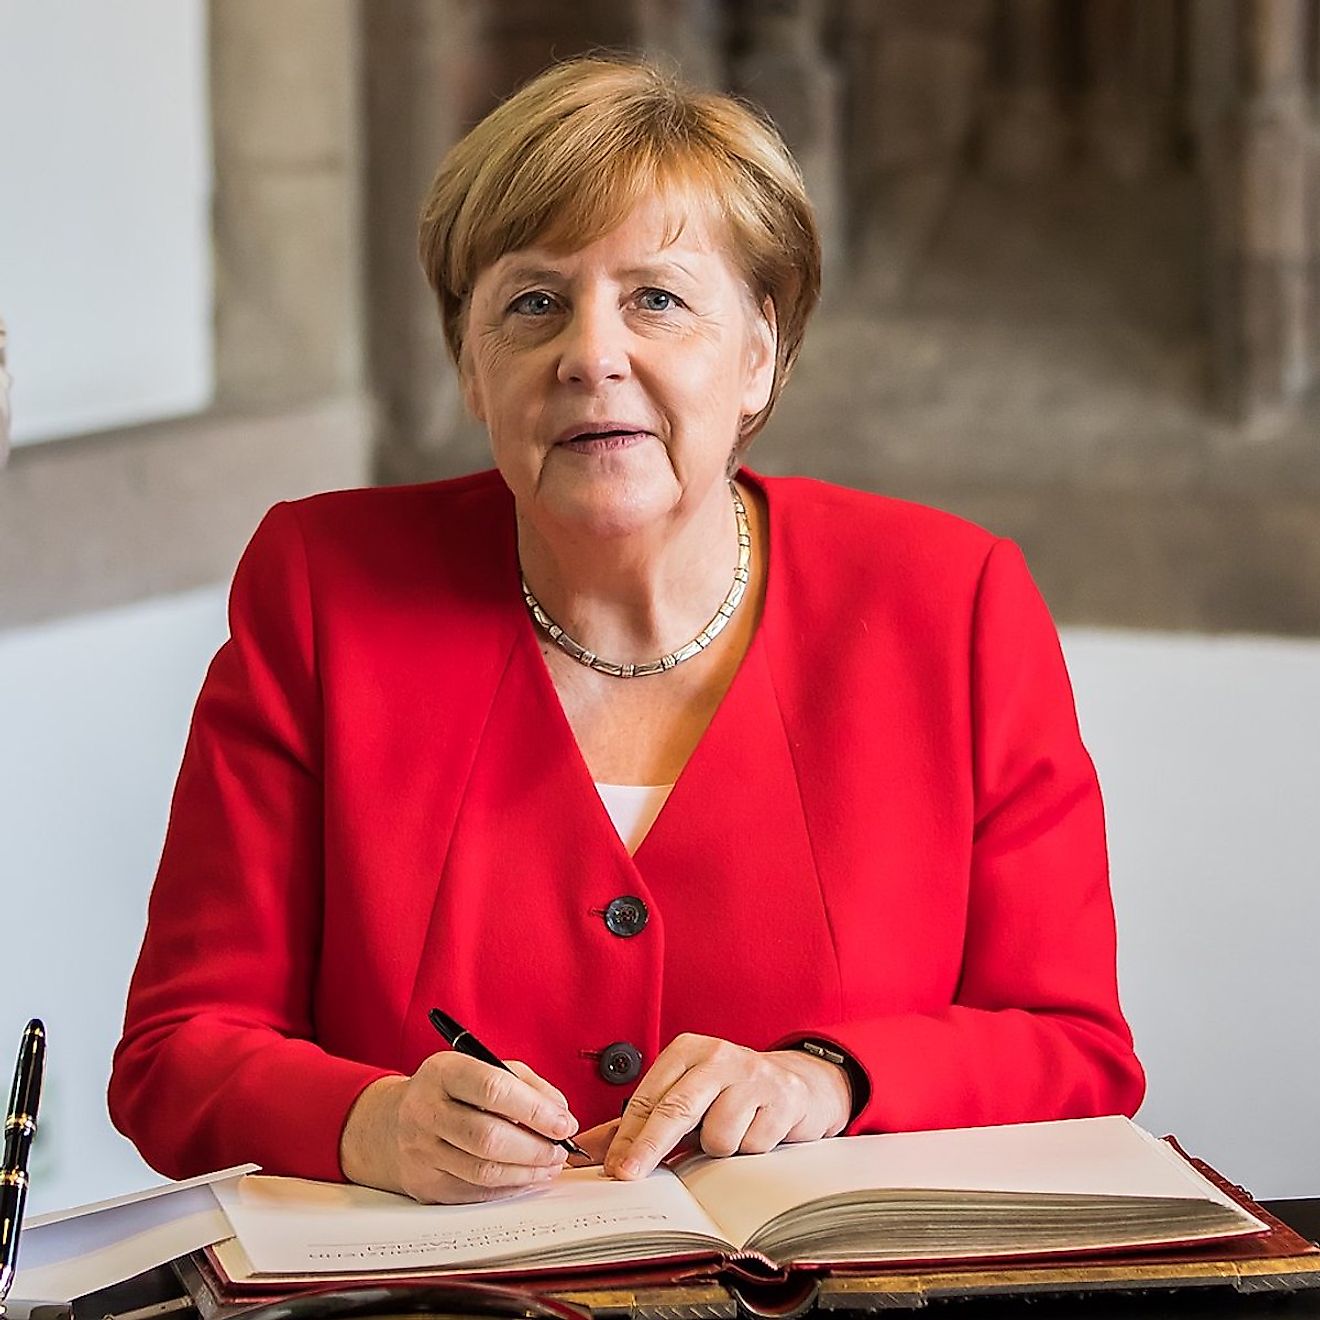 Angela Merkel. Image credit: Raimond Spekking/Wikimedia.org